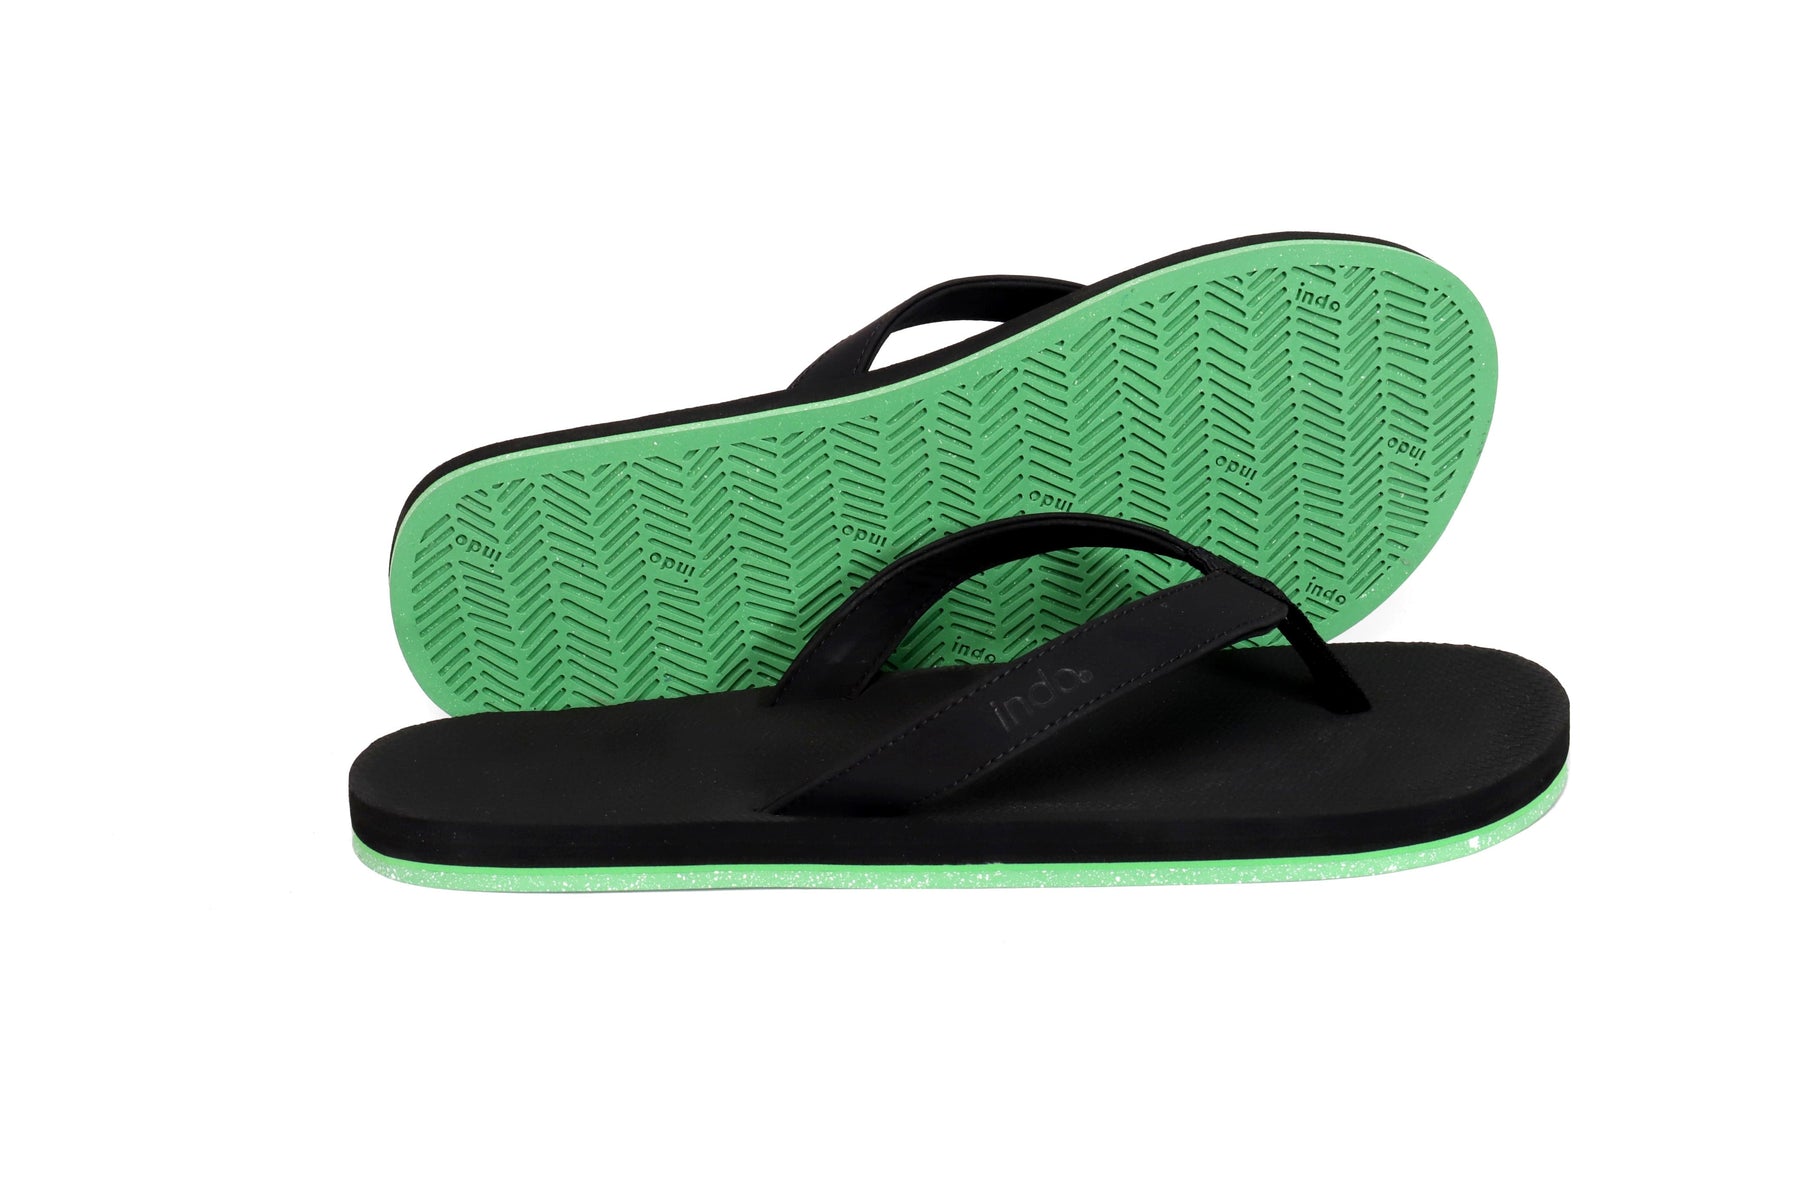 Men’s Flip Flops Sneaker Sole - Black/Lime Sole